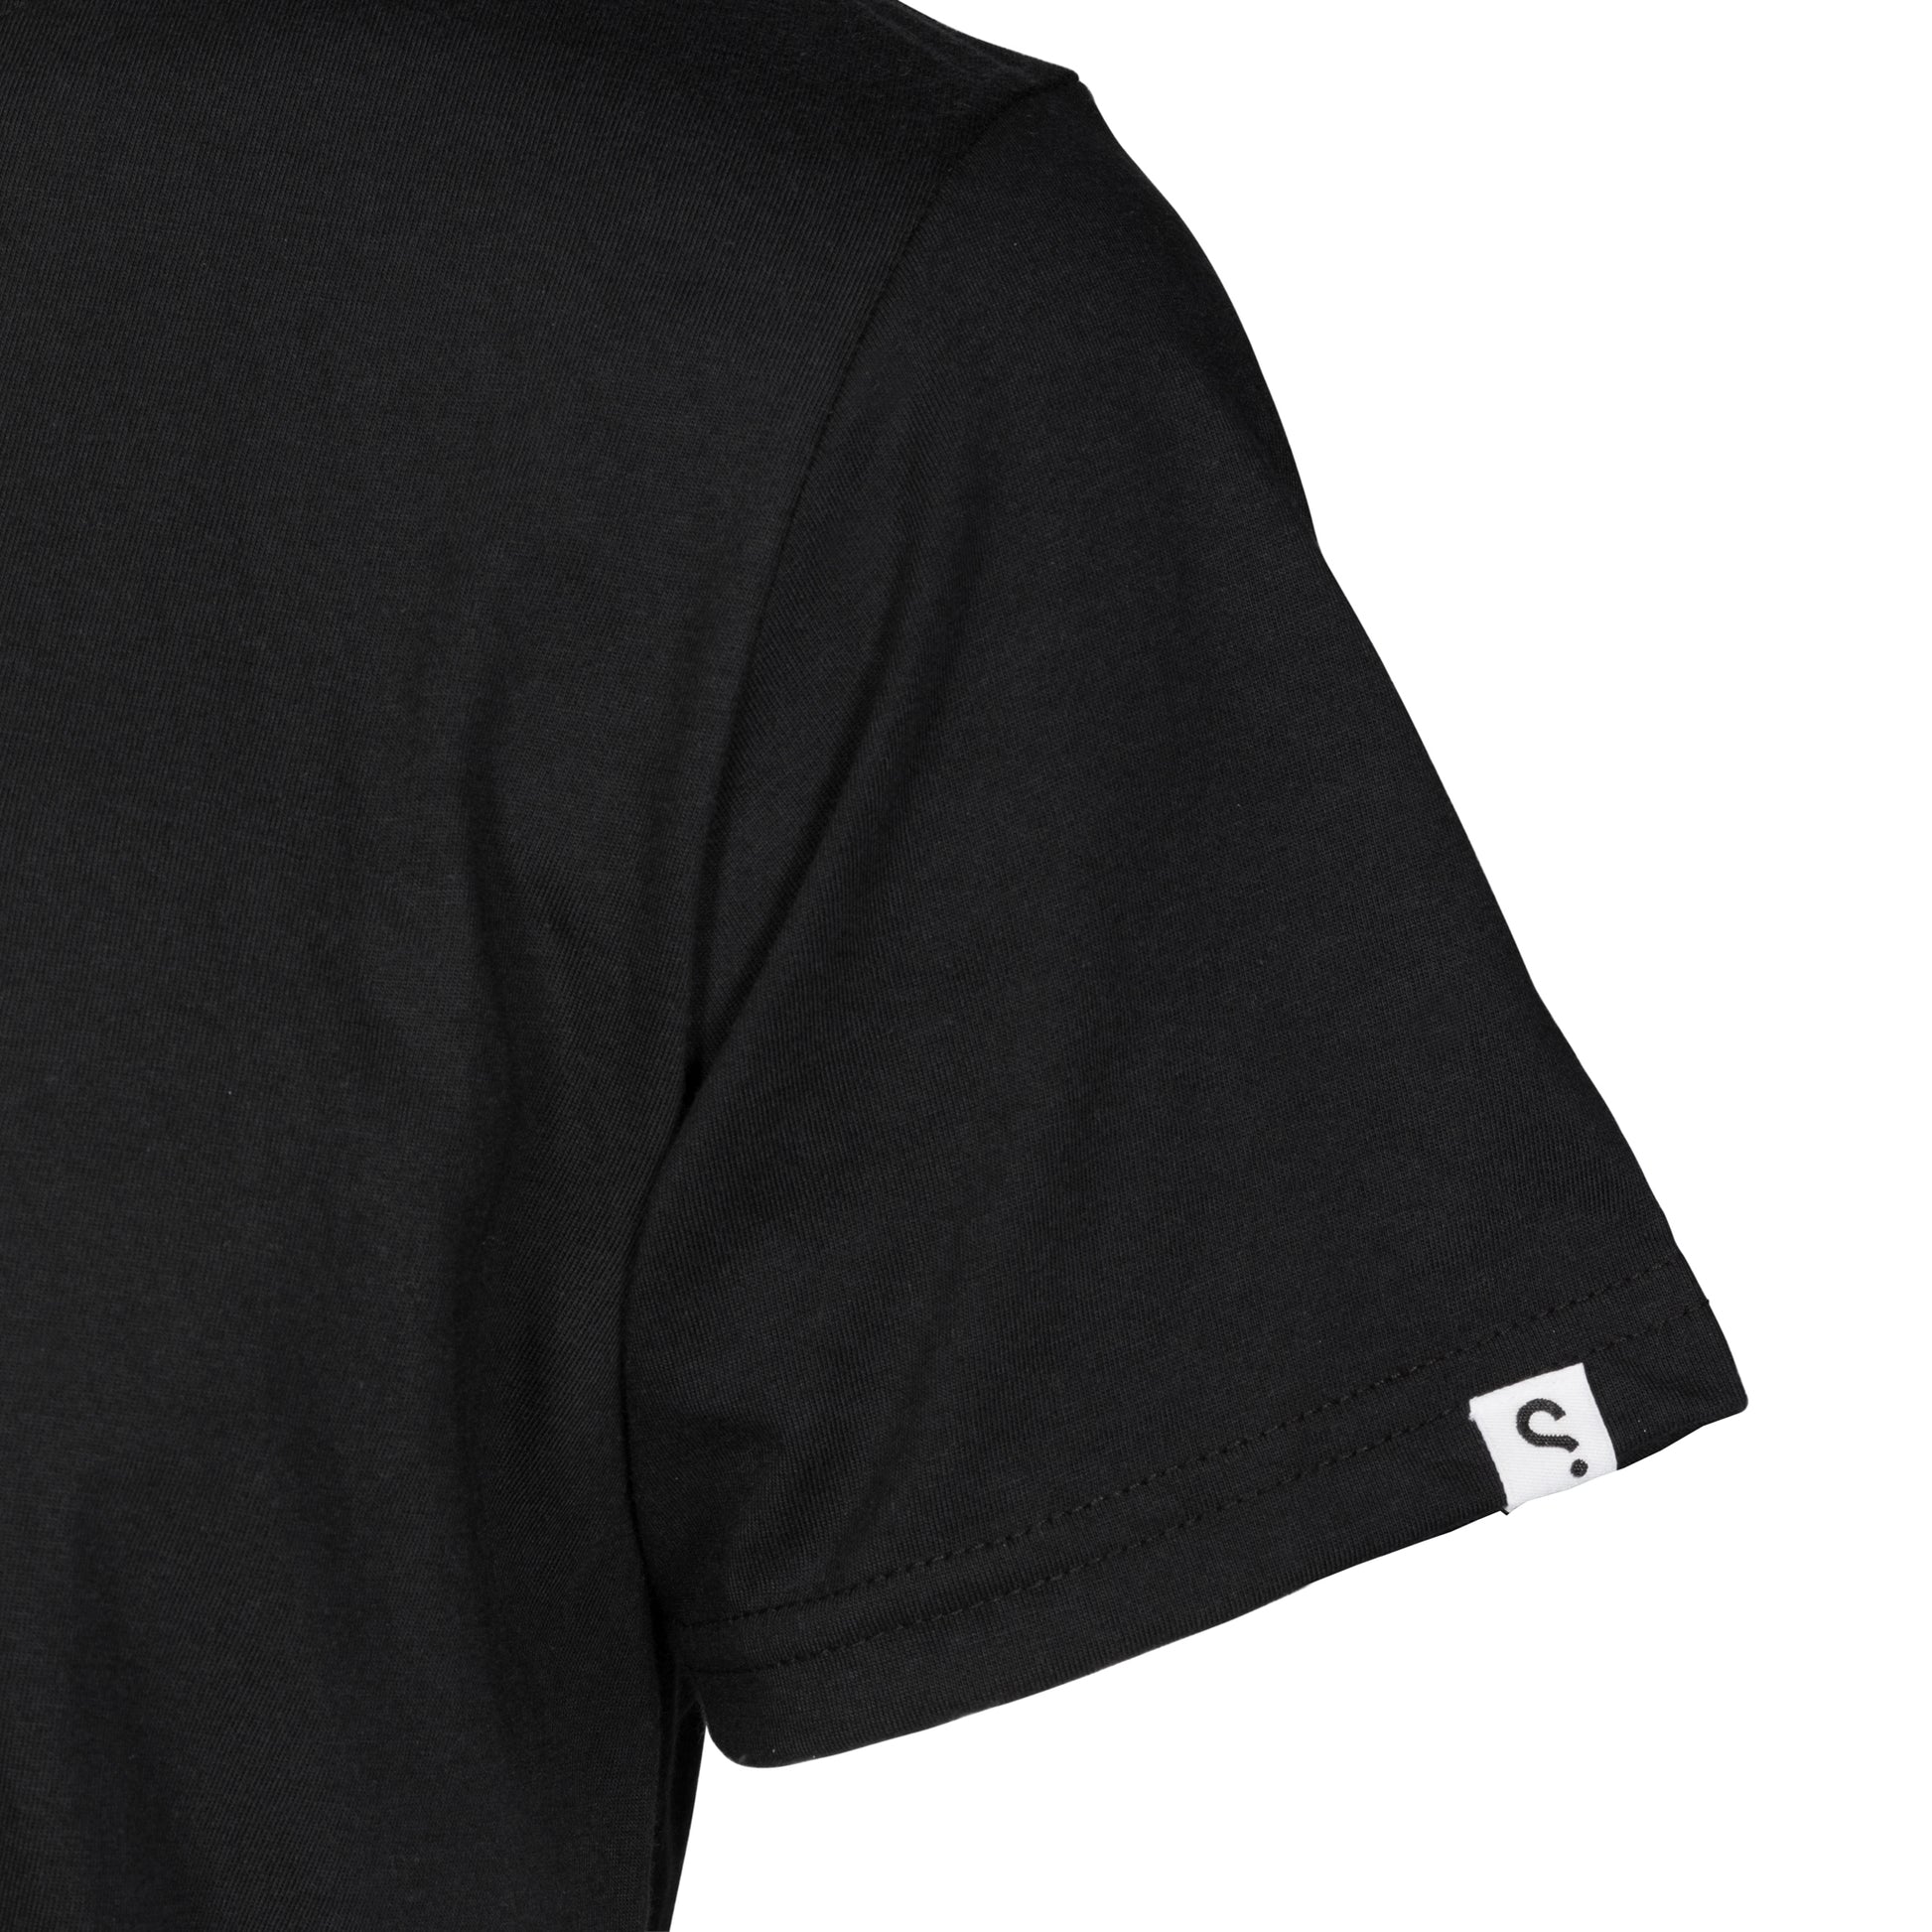 SPYSCAPE I SPY NY T-shirt with Hidden Zip Pocket - 